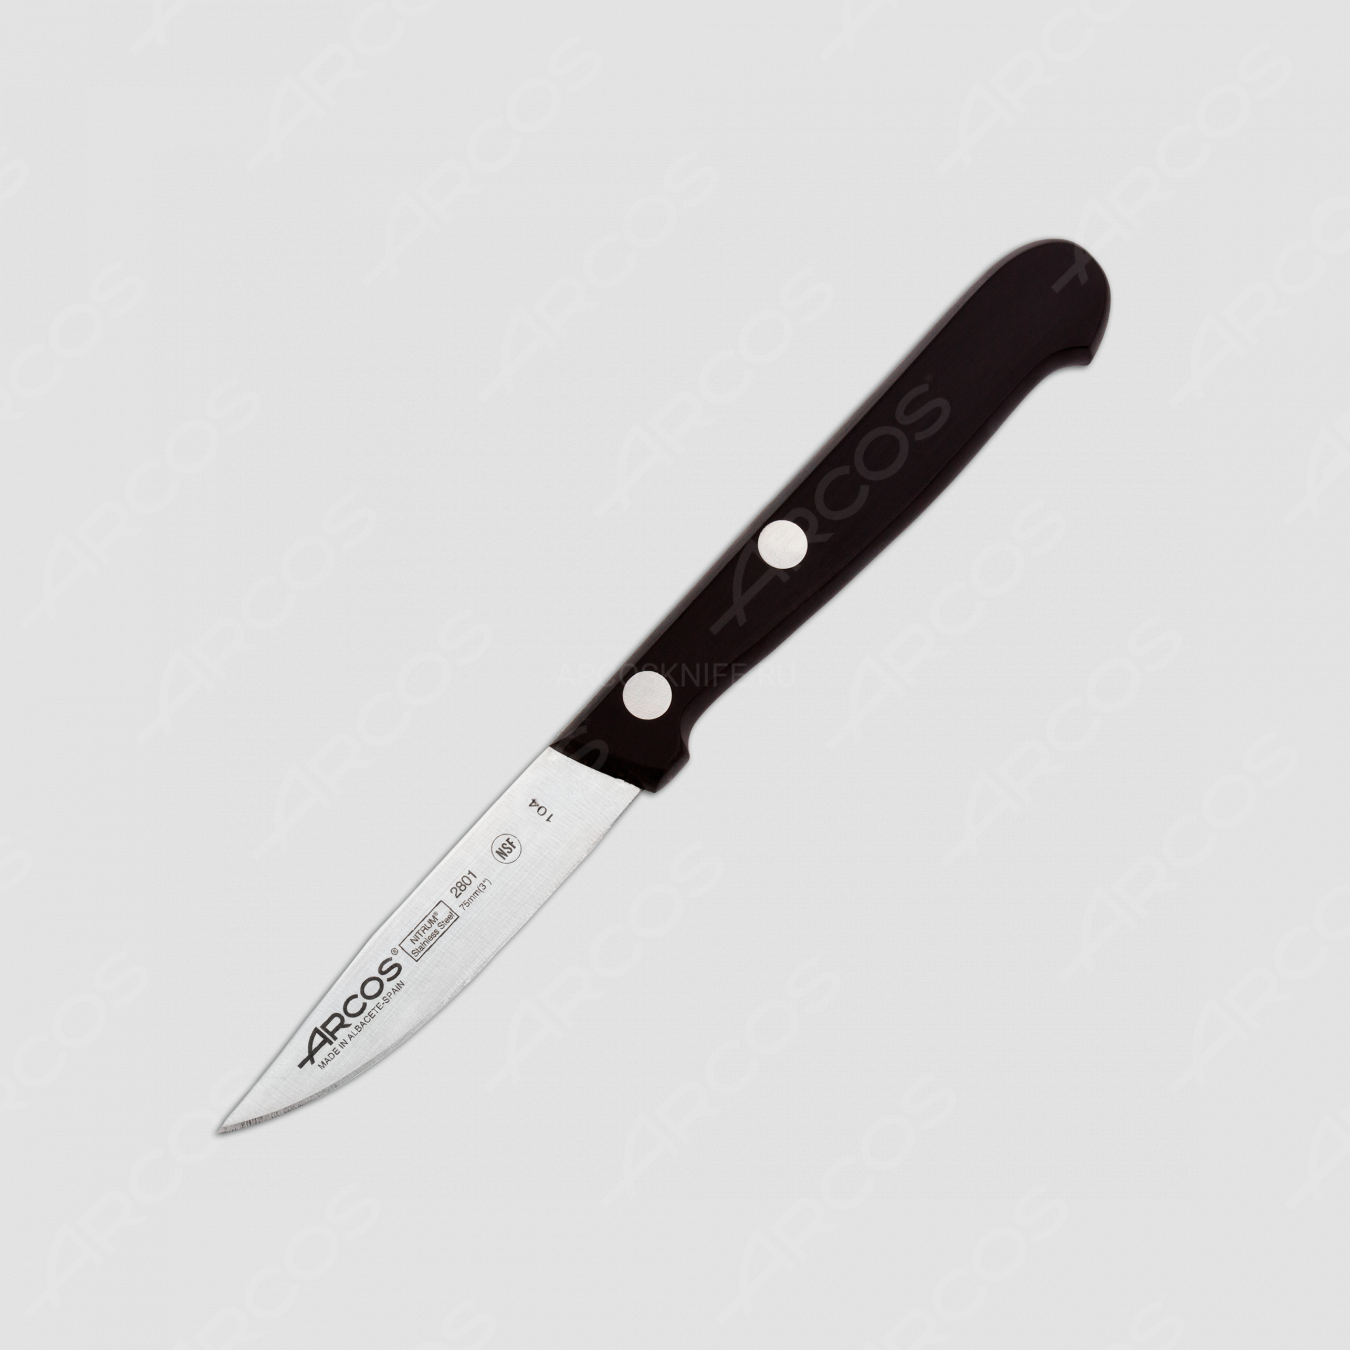 Нож кухонный для чистки 7,5 см, серия Universal, ARCOS, Испания